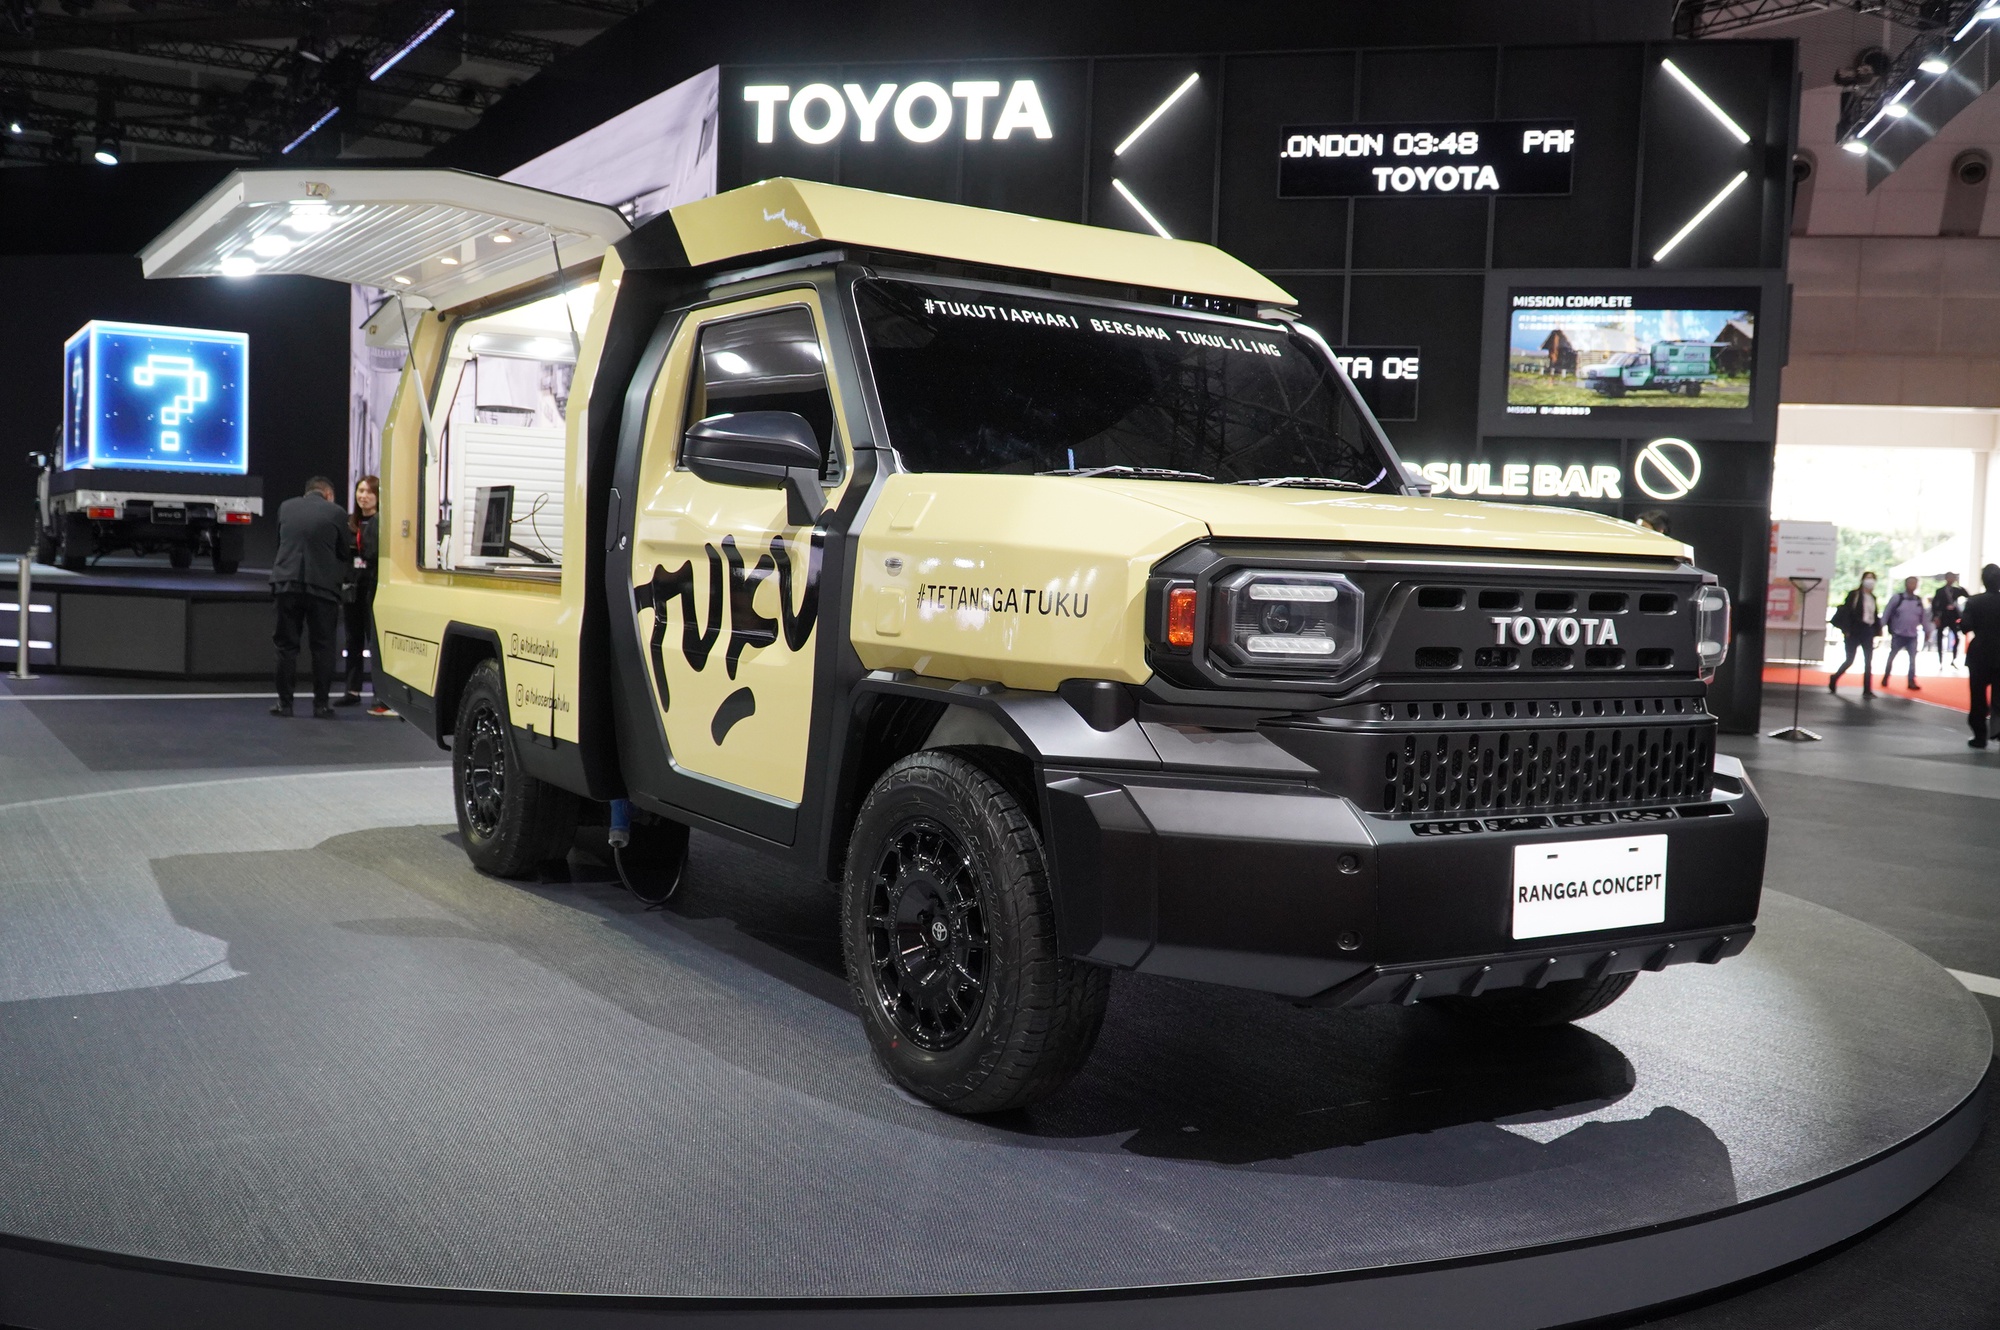 Toyota Rangga 'biến hình' như tắc kè,ếnhìnhnhưtắckègiáthấphơ<strong>888b</strong> giá rẻ hơn Hilux   - Ảnh 1.